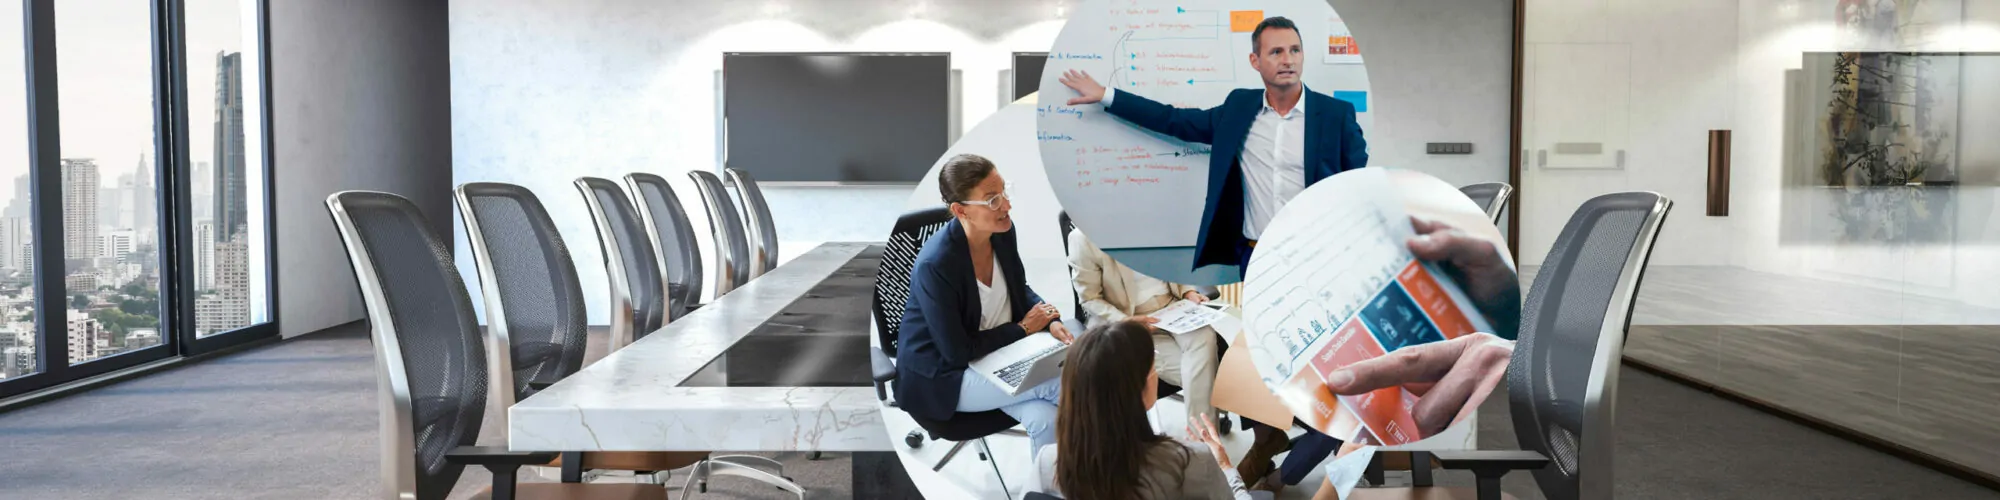 Drei Bilder zeigen einen Meeting-Raum sowie Personen in unterschiedlichen Siuationen, die Szenen einer typischen Beiratssitzung ähneln